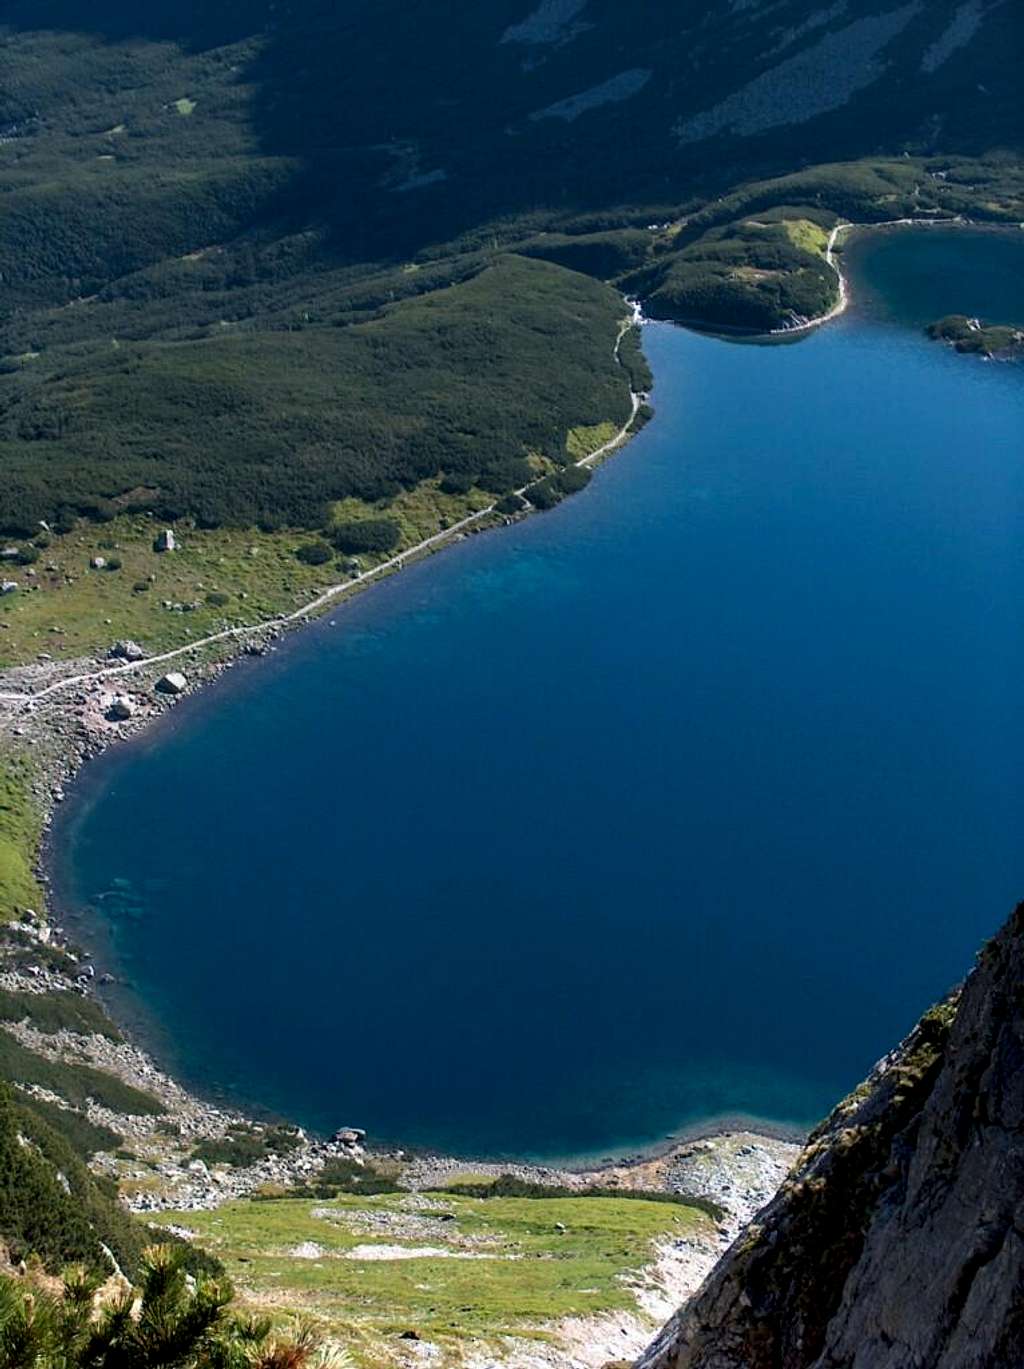 Lake Czarny Staw Gąsienicowy in Dolina Gąsienicowa (Polish Tatras)